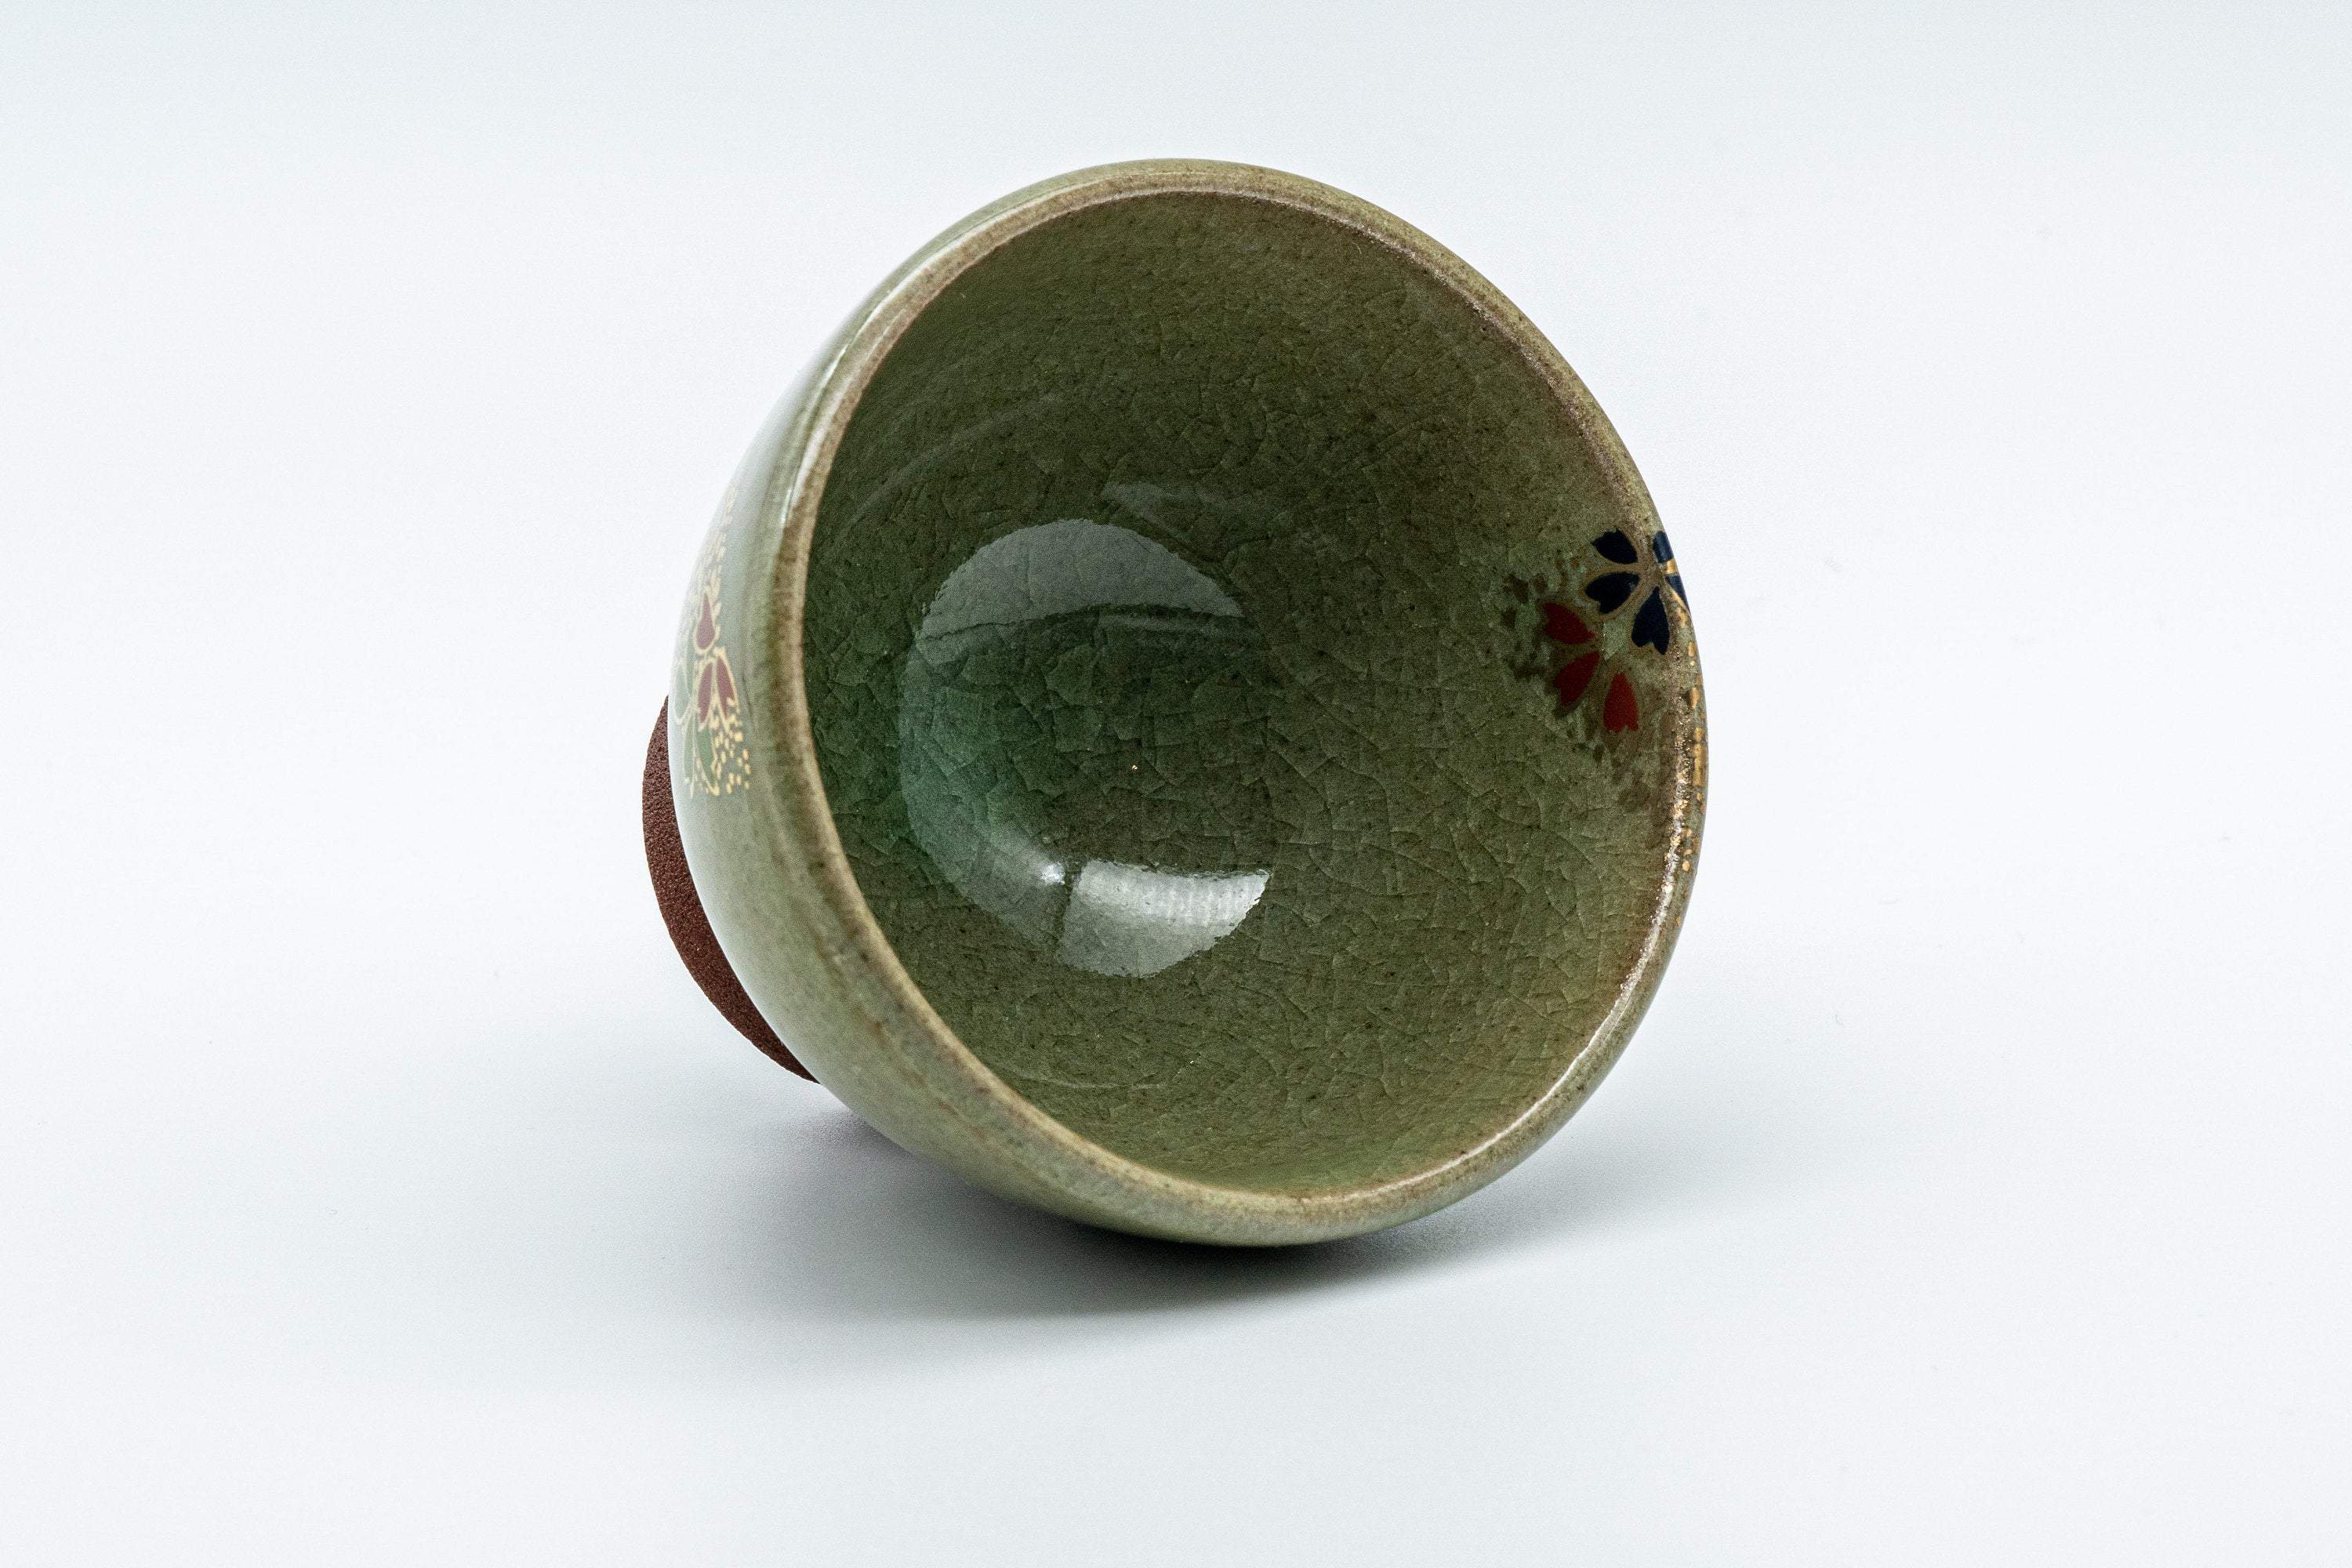 Japanese Teacup - Floral Celadon Sugi-nari Senchawan - 75ml